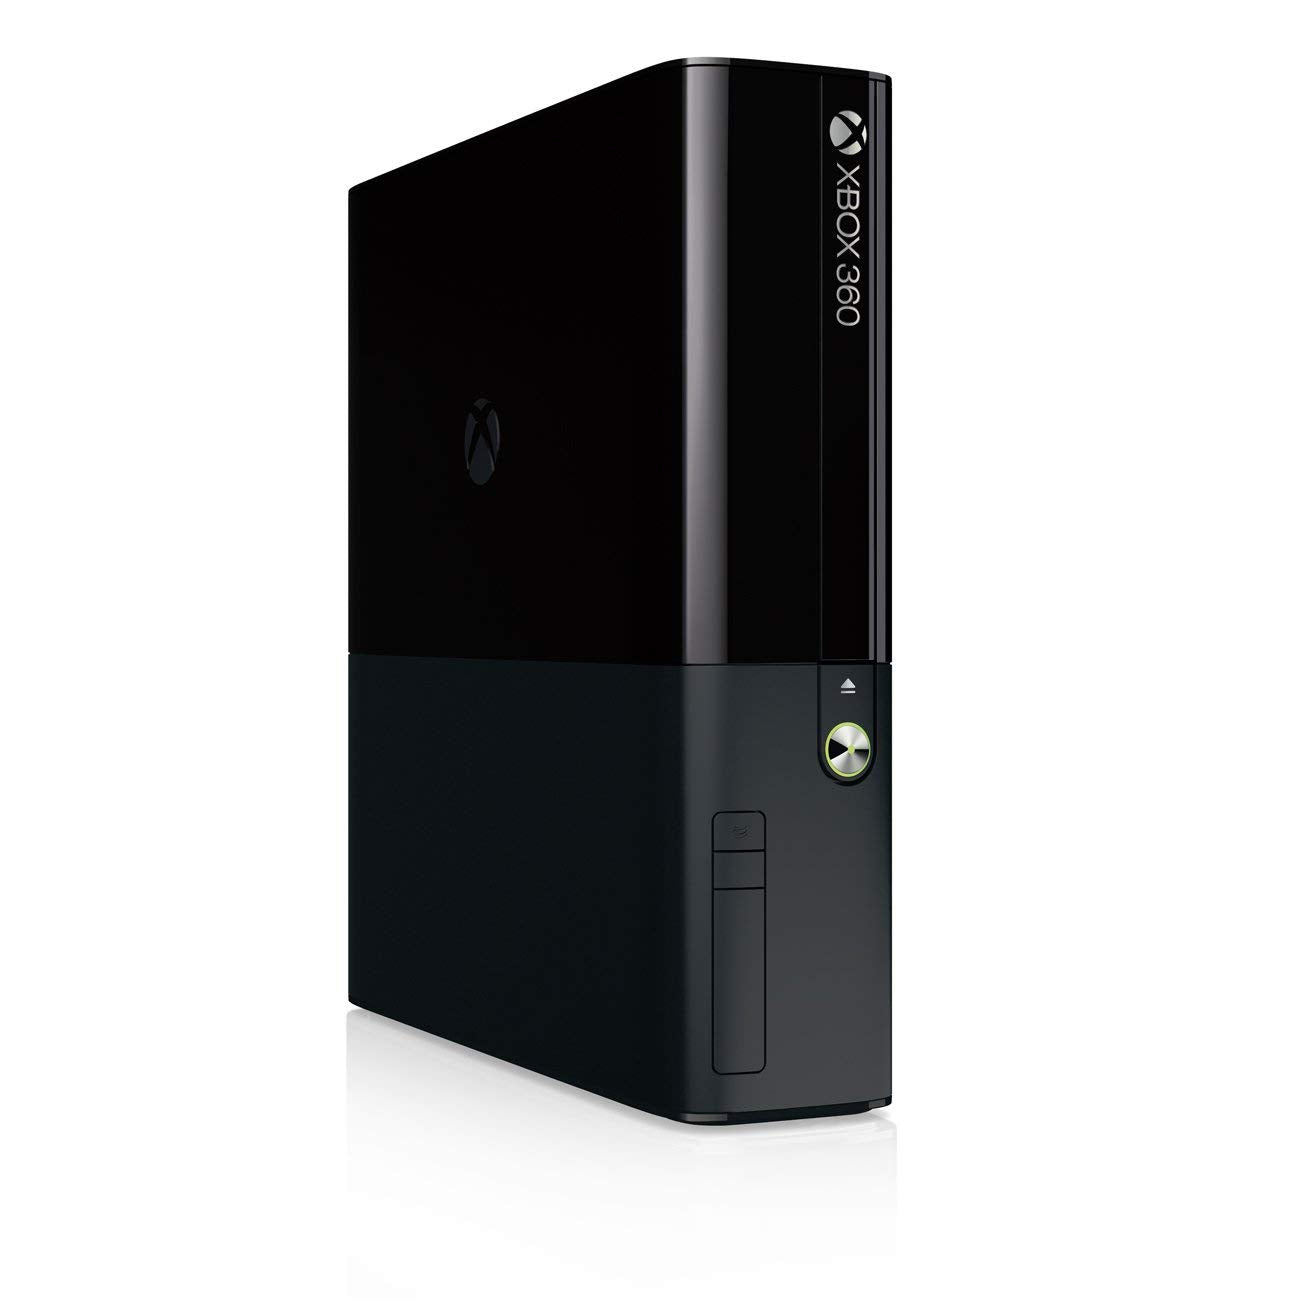 Xbox 360 E 4GB Console - Black